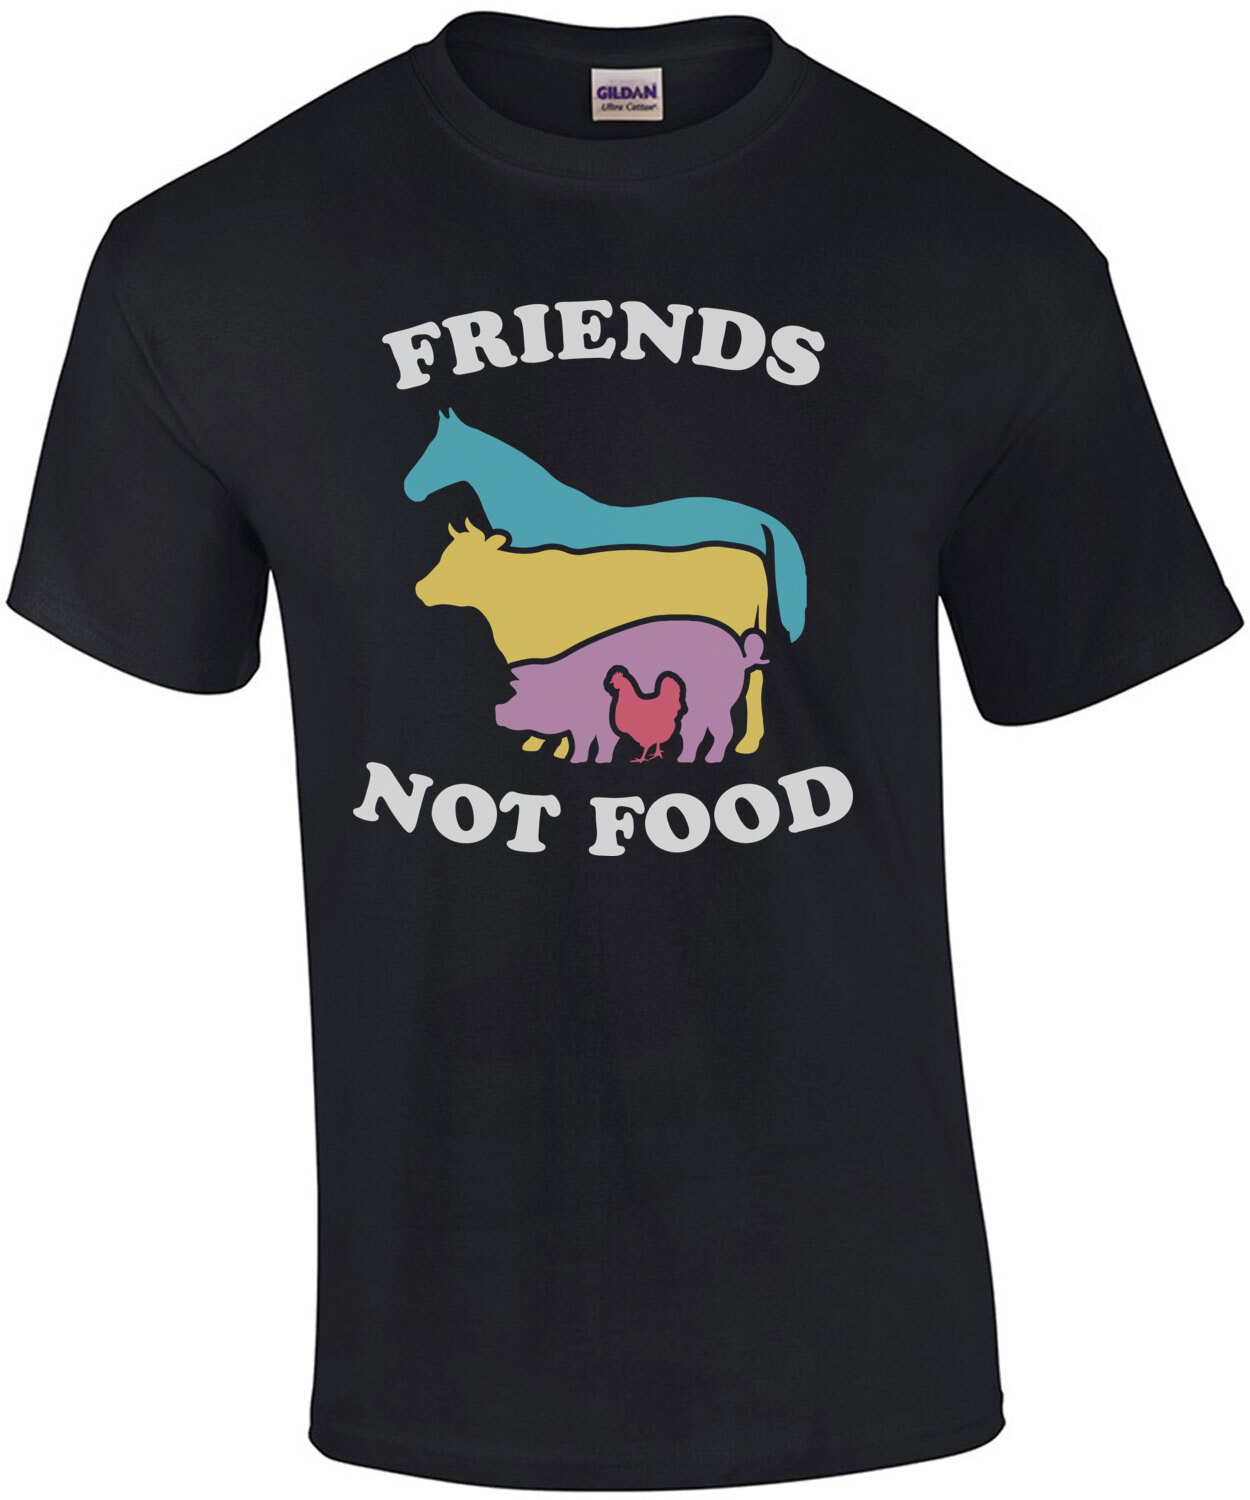 Friends Not Food - Vegetarian T-Shirt